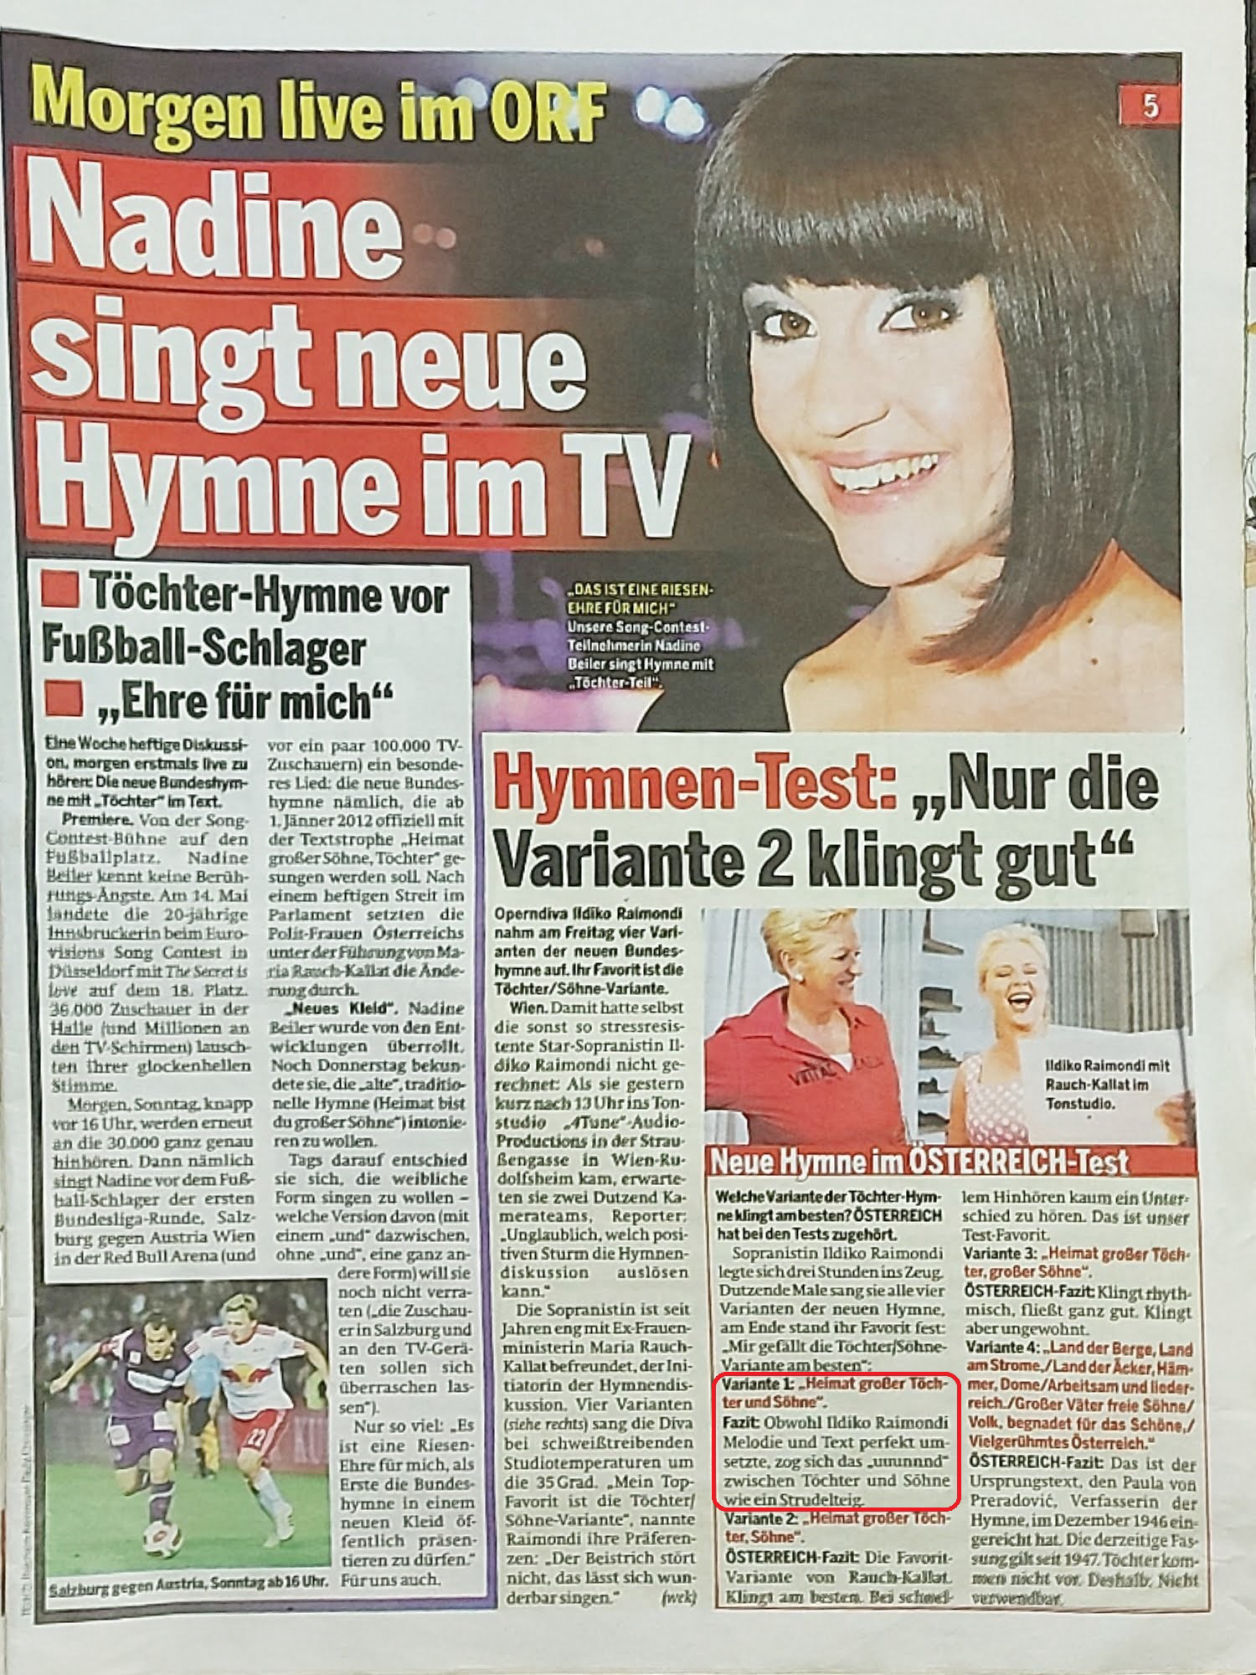 Nadine singt neue Hymne im TV, Hymnen Test, Rauch-Kallat